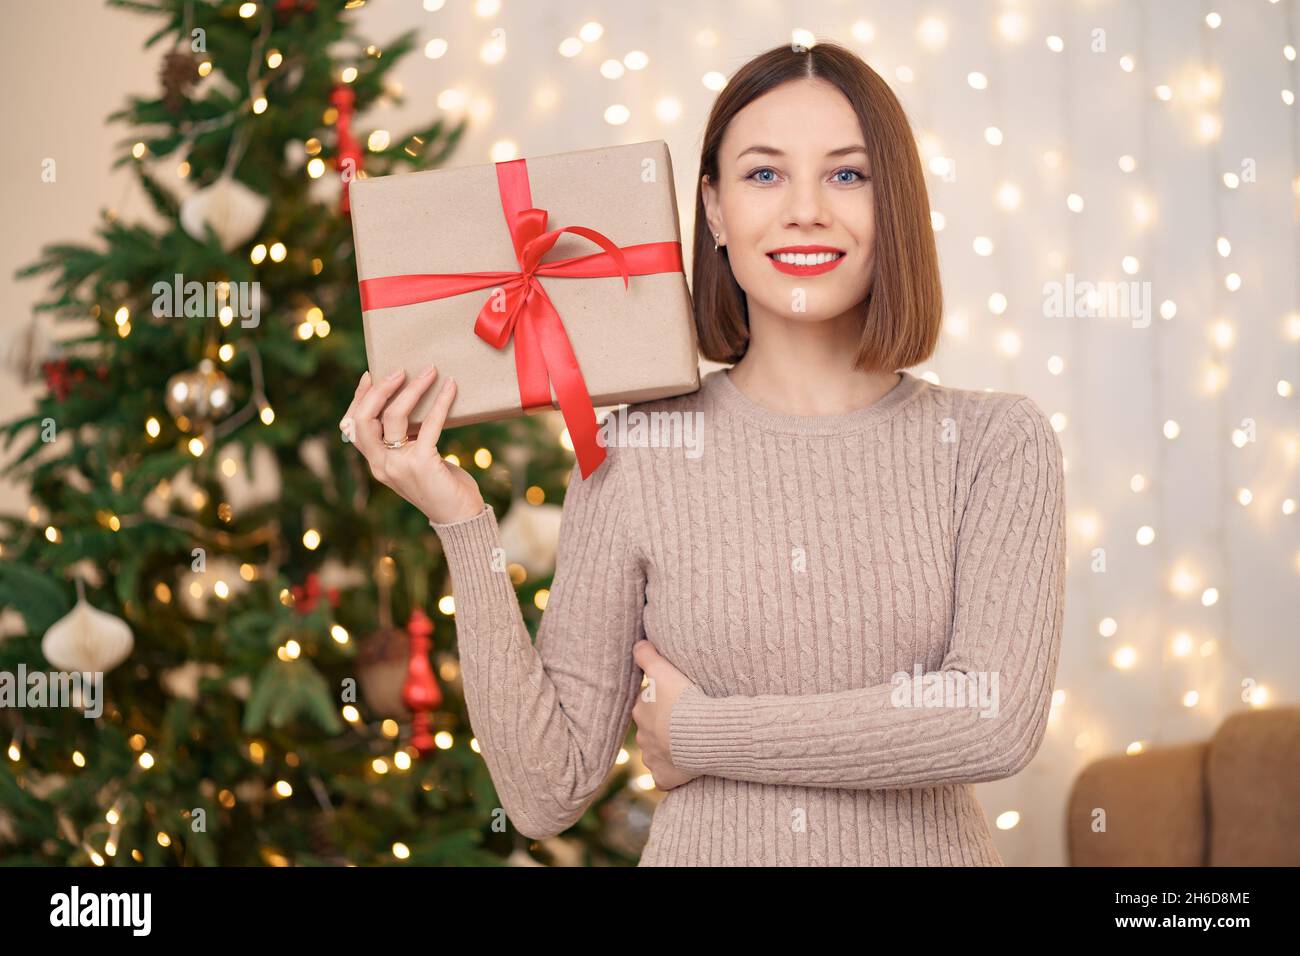 Portrait de jeune femme heureuse lèvres rouges regardant l'appareil photo tenant une boîte cadeau emballée.Gros plan la femme satisfaite a reçu la boîte actuelle.Arrière-plan des lumières de Noël festives. Banque D'Images